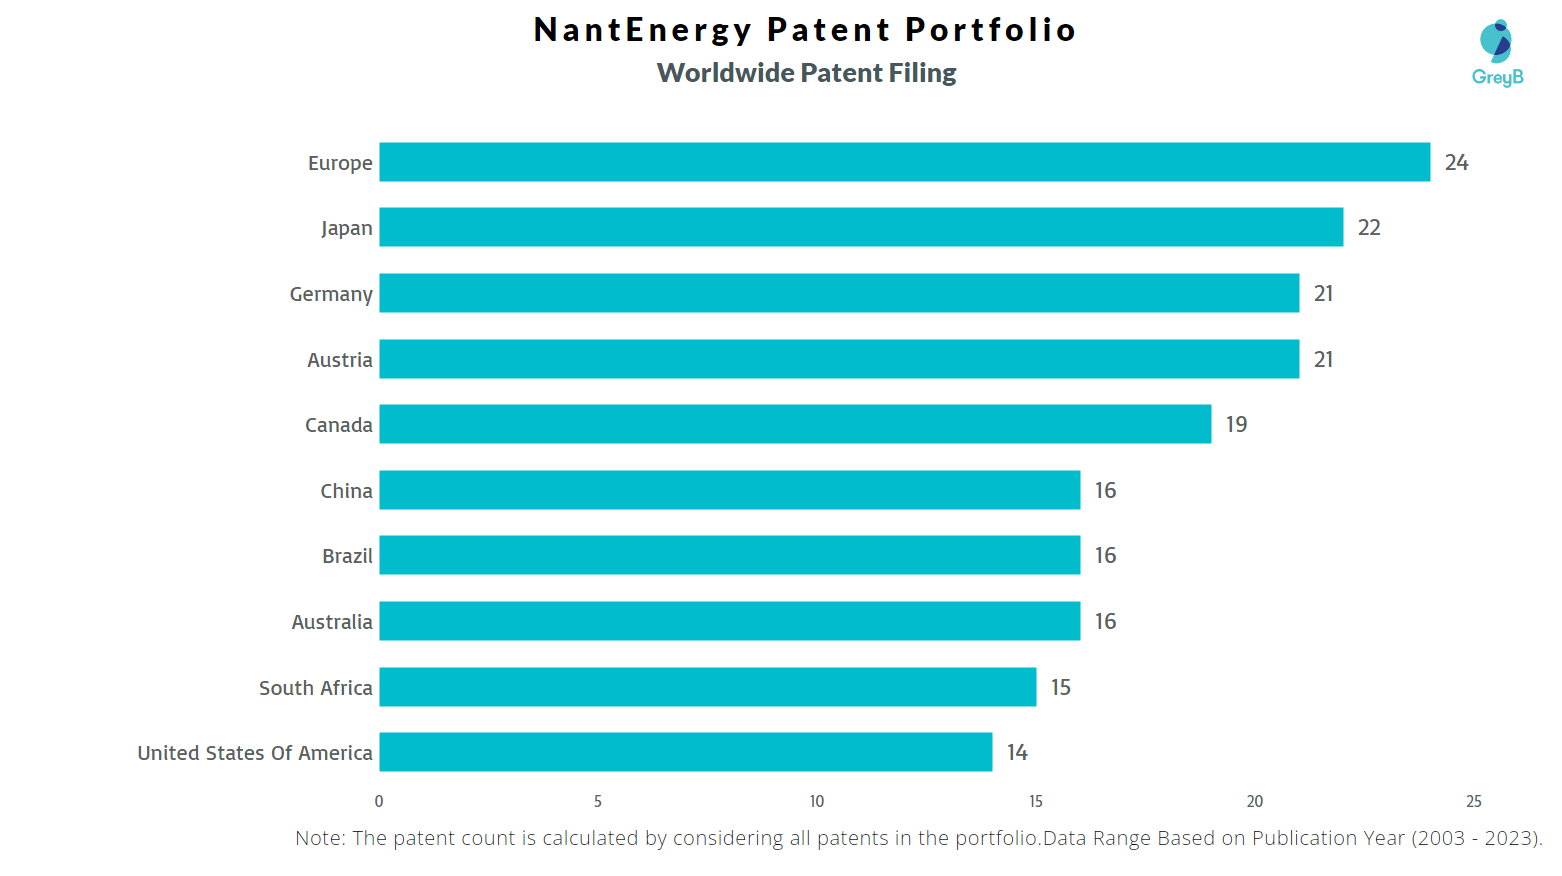 NantEnergy Worldwide Patent Filing